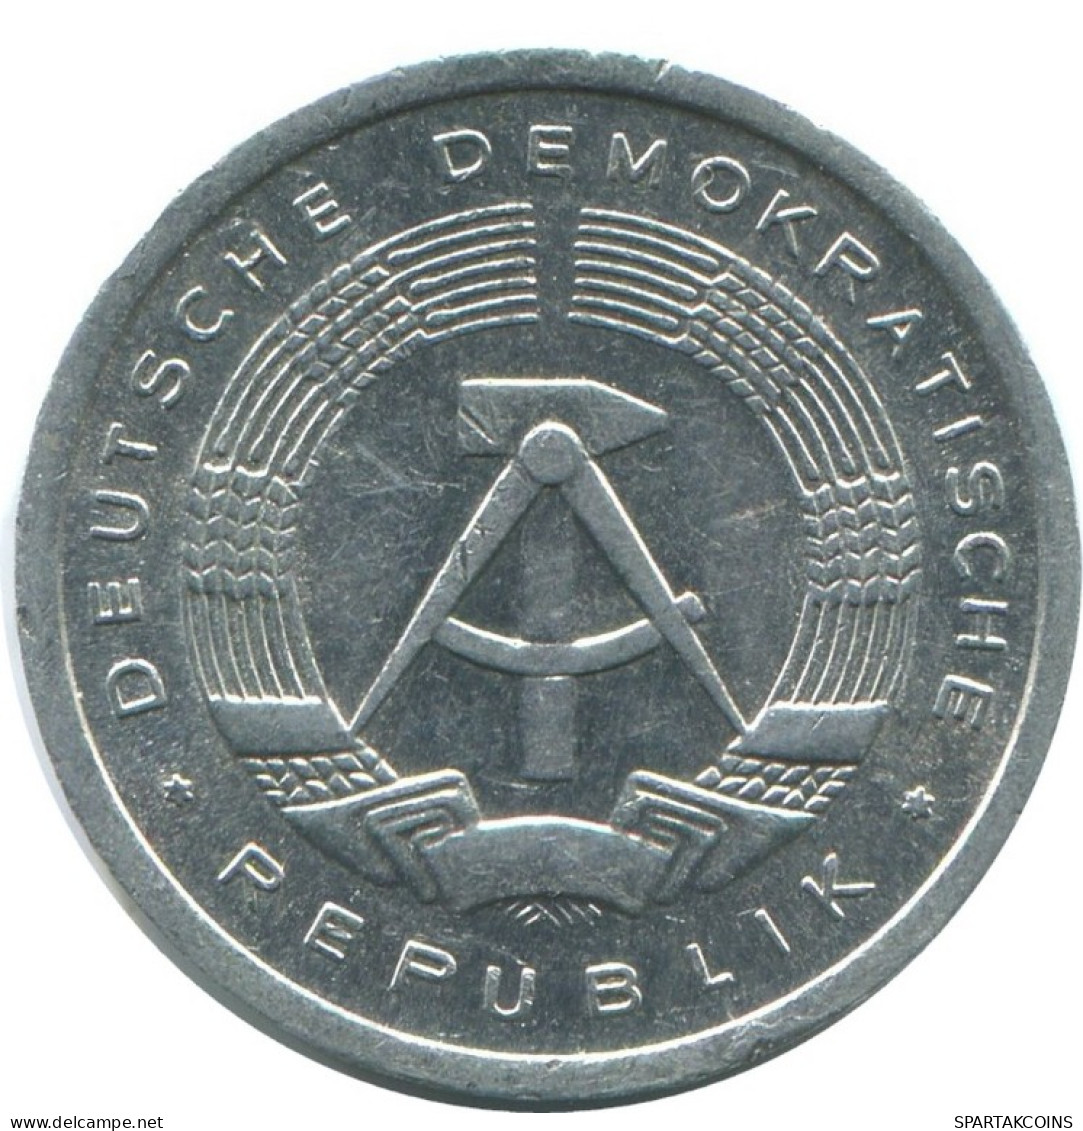 1 PFENNIG 1984 A DDR EAST ALEMANIA Moneda GERMANY #AE043.E.A - 1 Pfennig